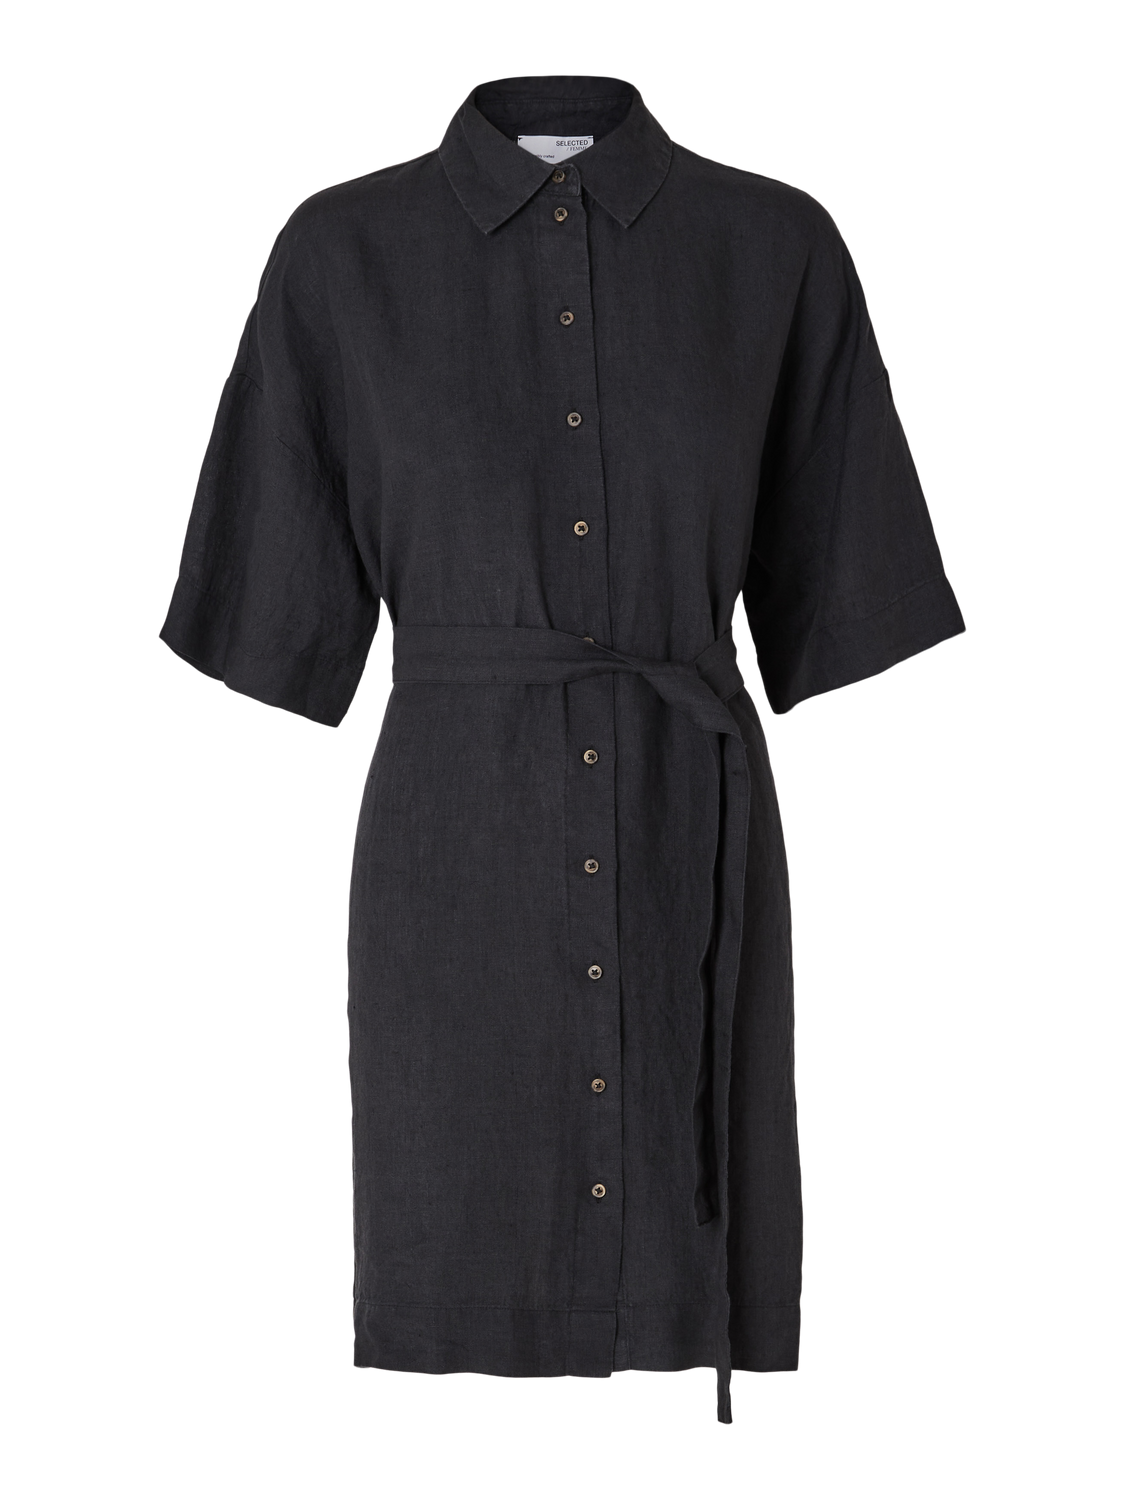 Linnie 2/4 Short Linen Shirt Dress B - Black